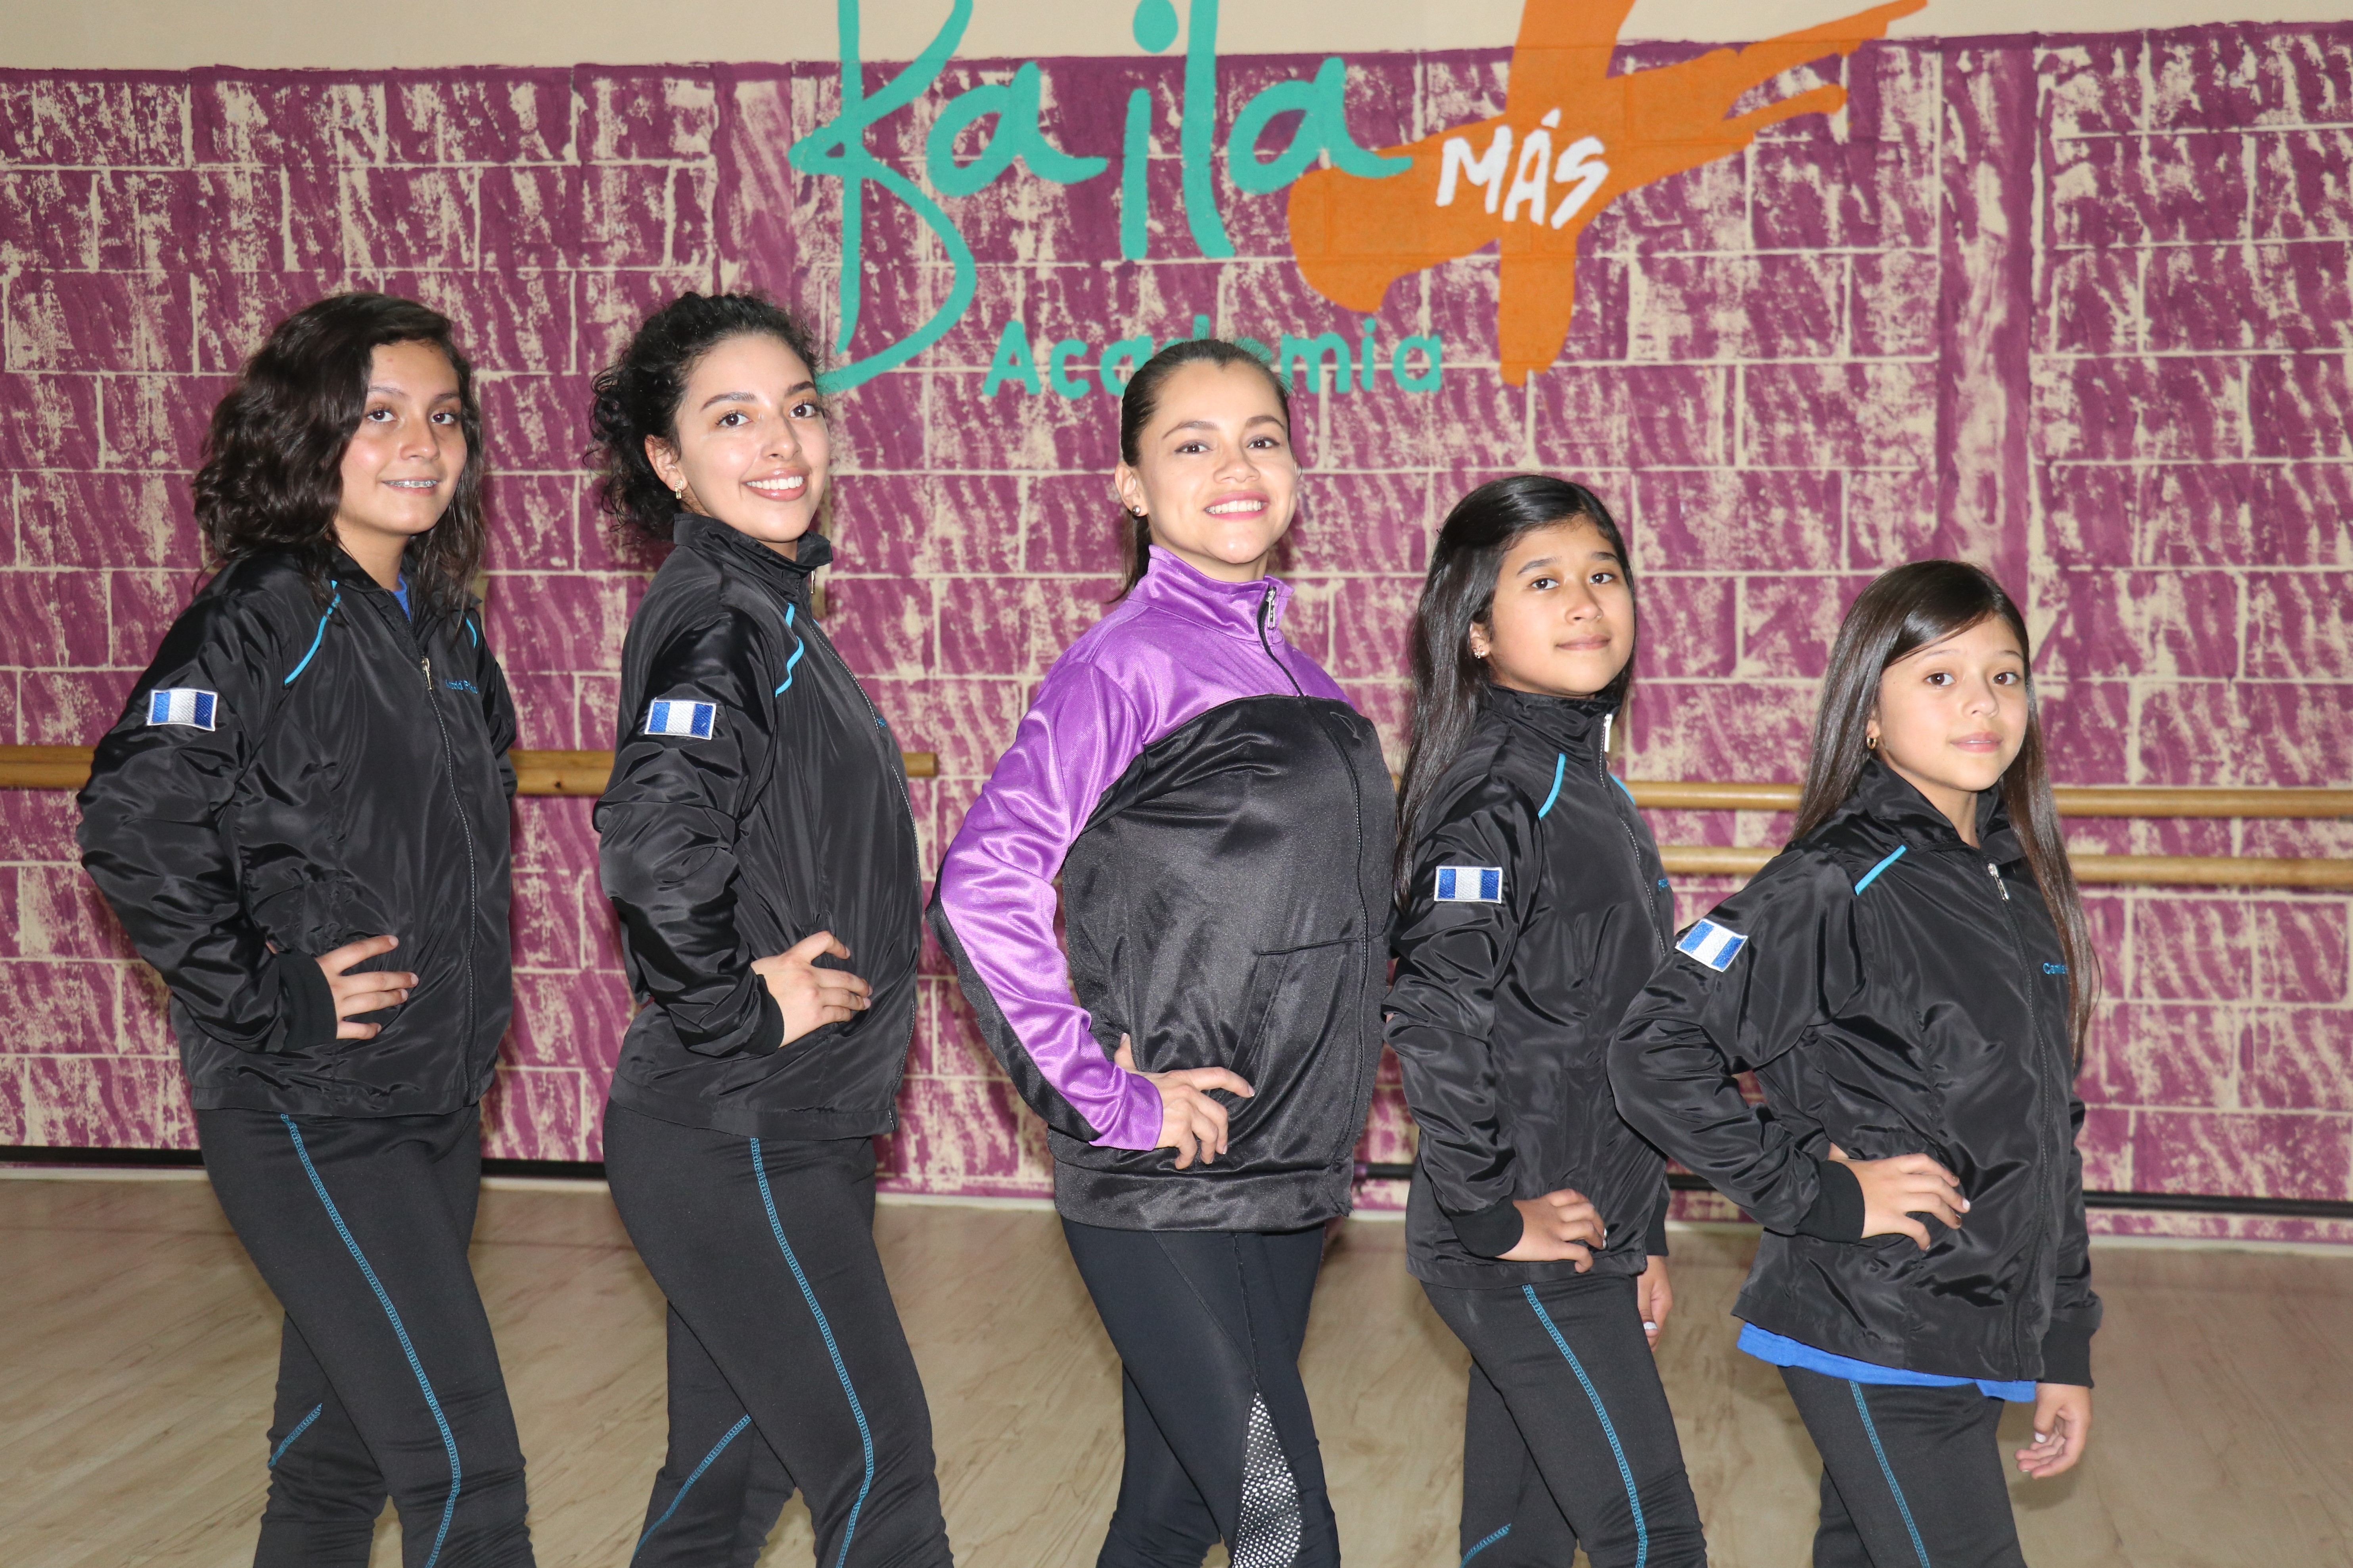 De izquierda a derecha: Tatania Aguilar, Regina Bethancourt, Astrid Fajardo, Renata Castillo y Camila Castillo, representarán a la Baila Más Academia. (Foto Prensa Libre: Raúl Juárez)